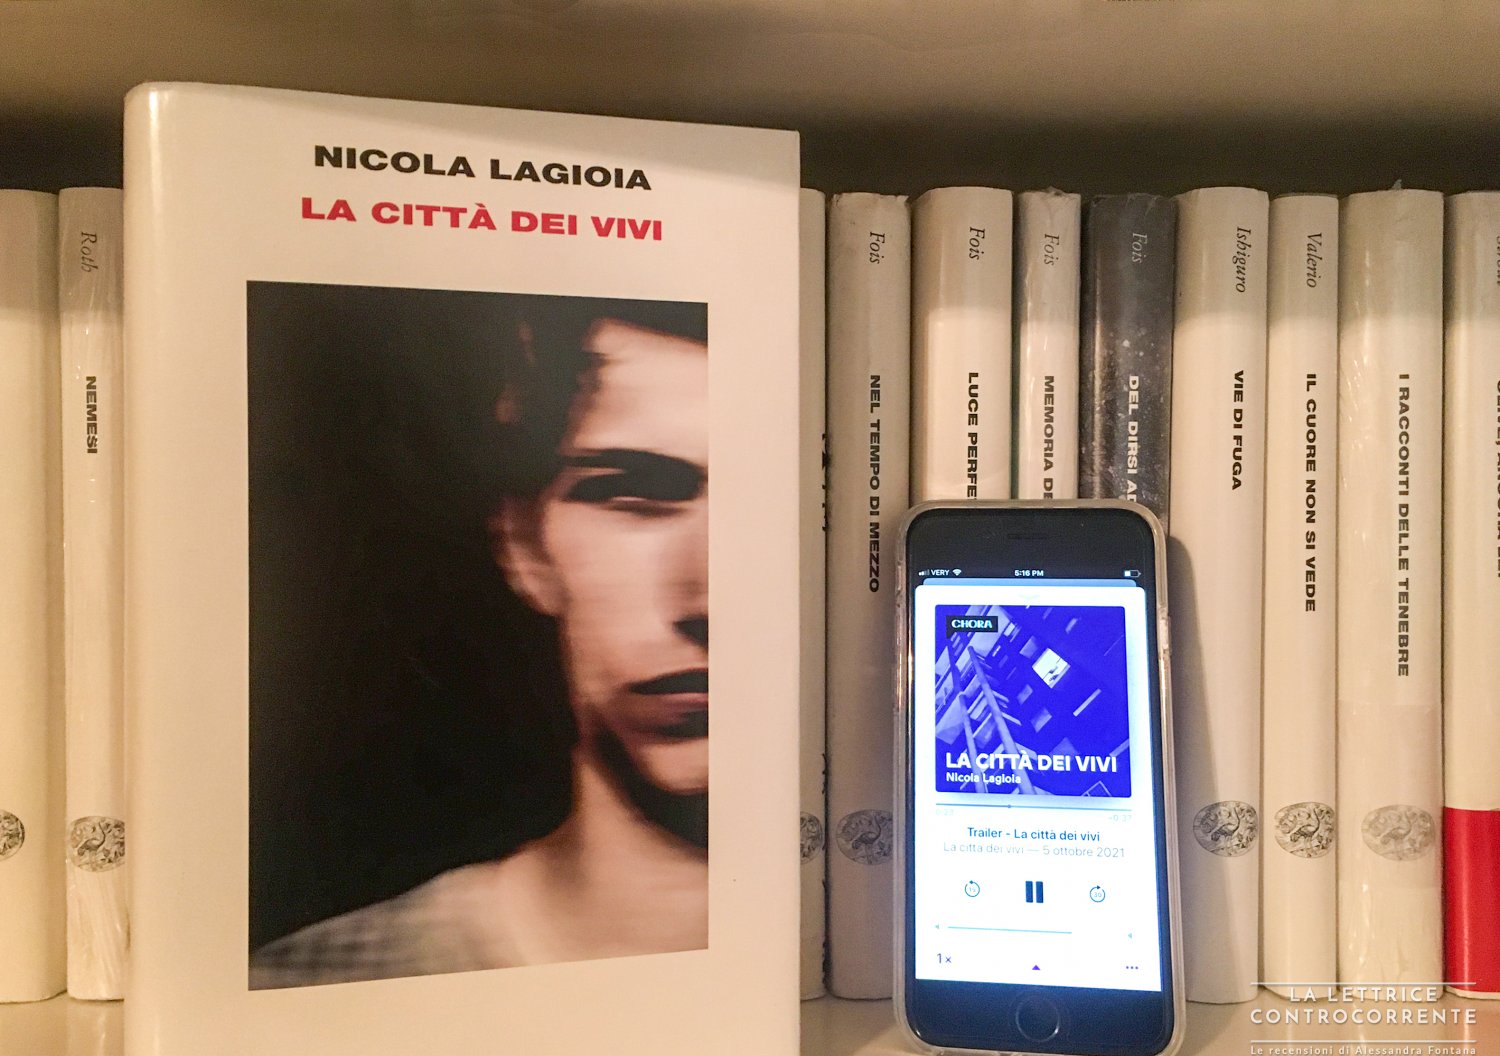 La città dei vivi di Nicola Lagioia diventa un podcast - La lettrice  controcorrente